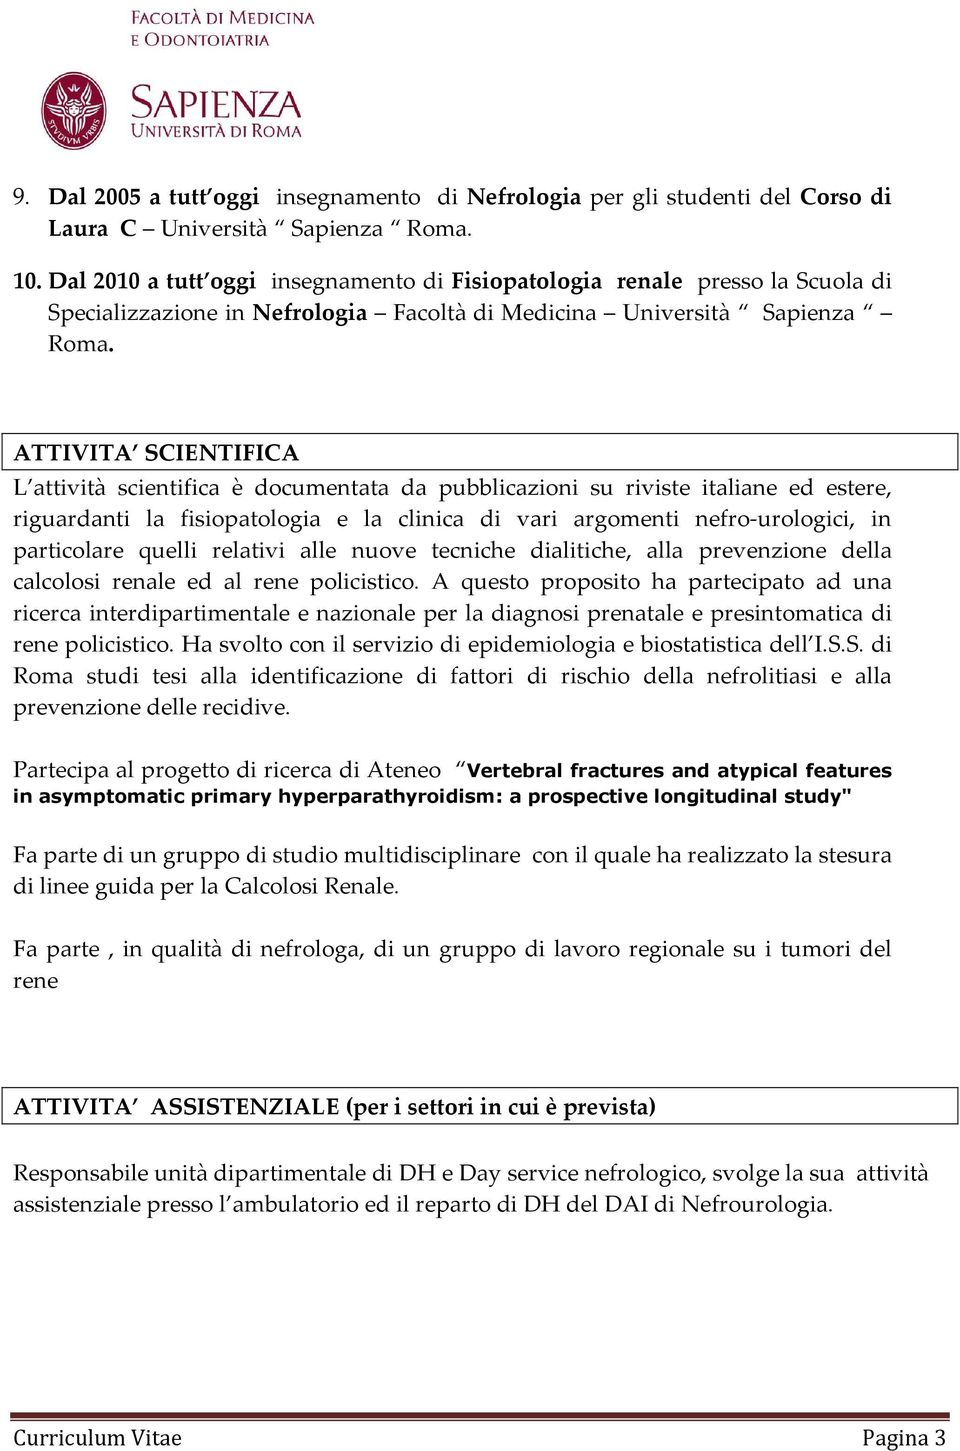 ATTIVITA SCIENTIFICA L attività scientifica è documentata da pubblicazioni su riviste italiane ed estere, riguardanti la fisiopatologia e la clinica di vari argomenti nefro-urologici, in particolare